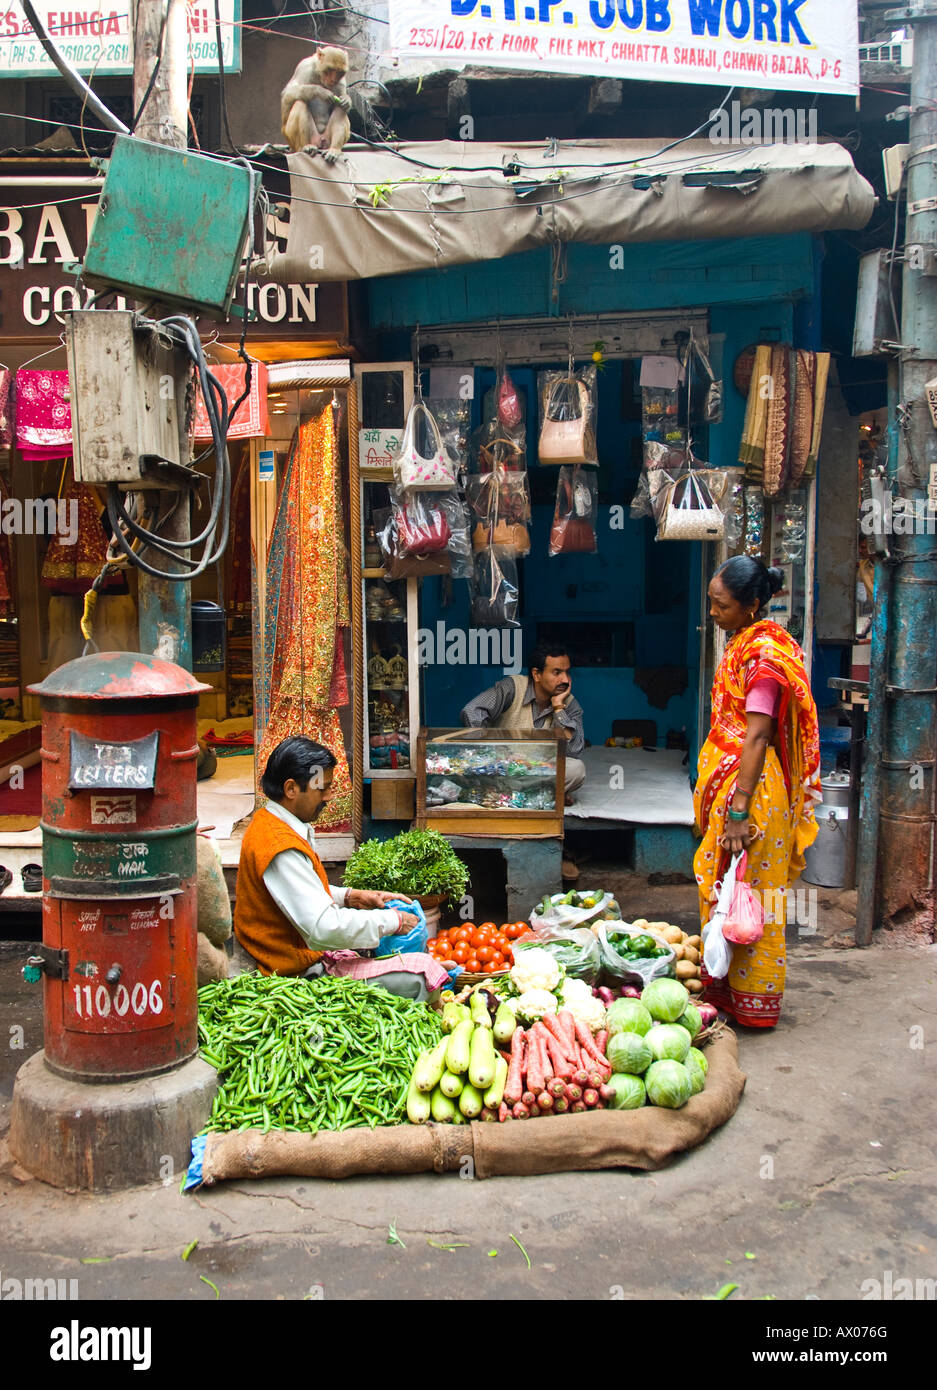 Un street market stall la vente de fruits et légumes frais de Chandni Chowk Delhi Inde Banque D'Images